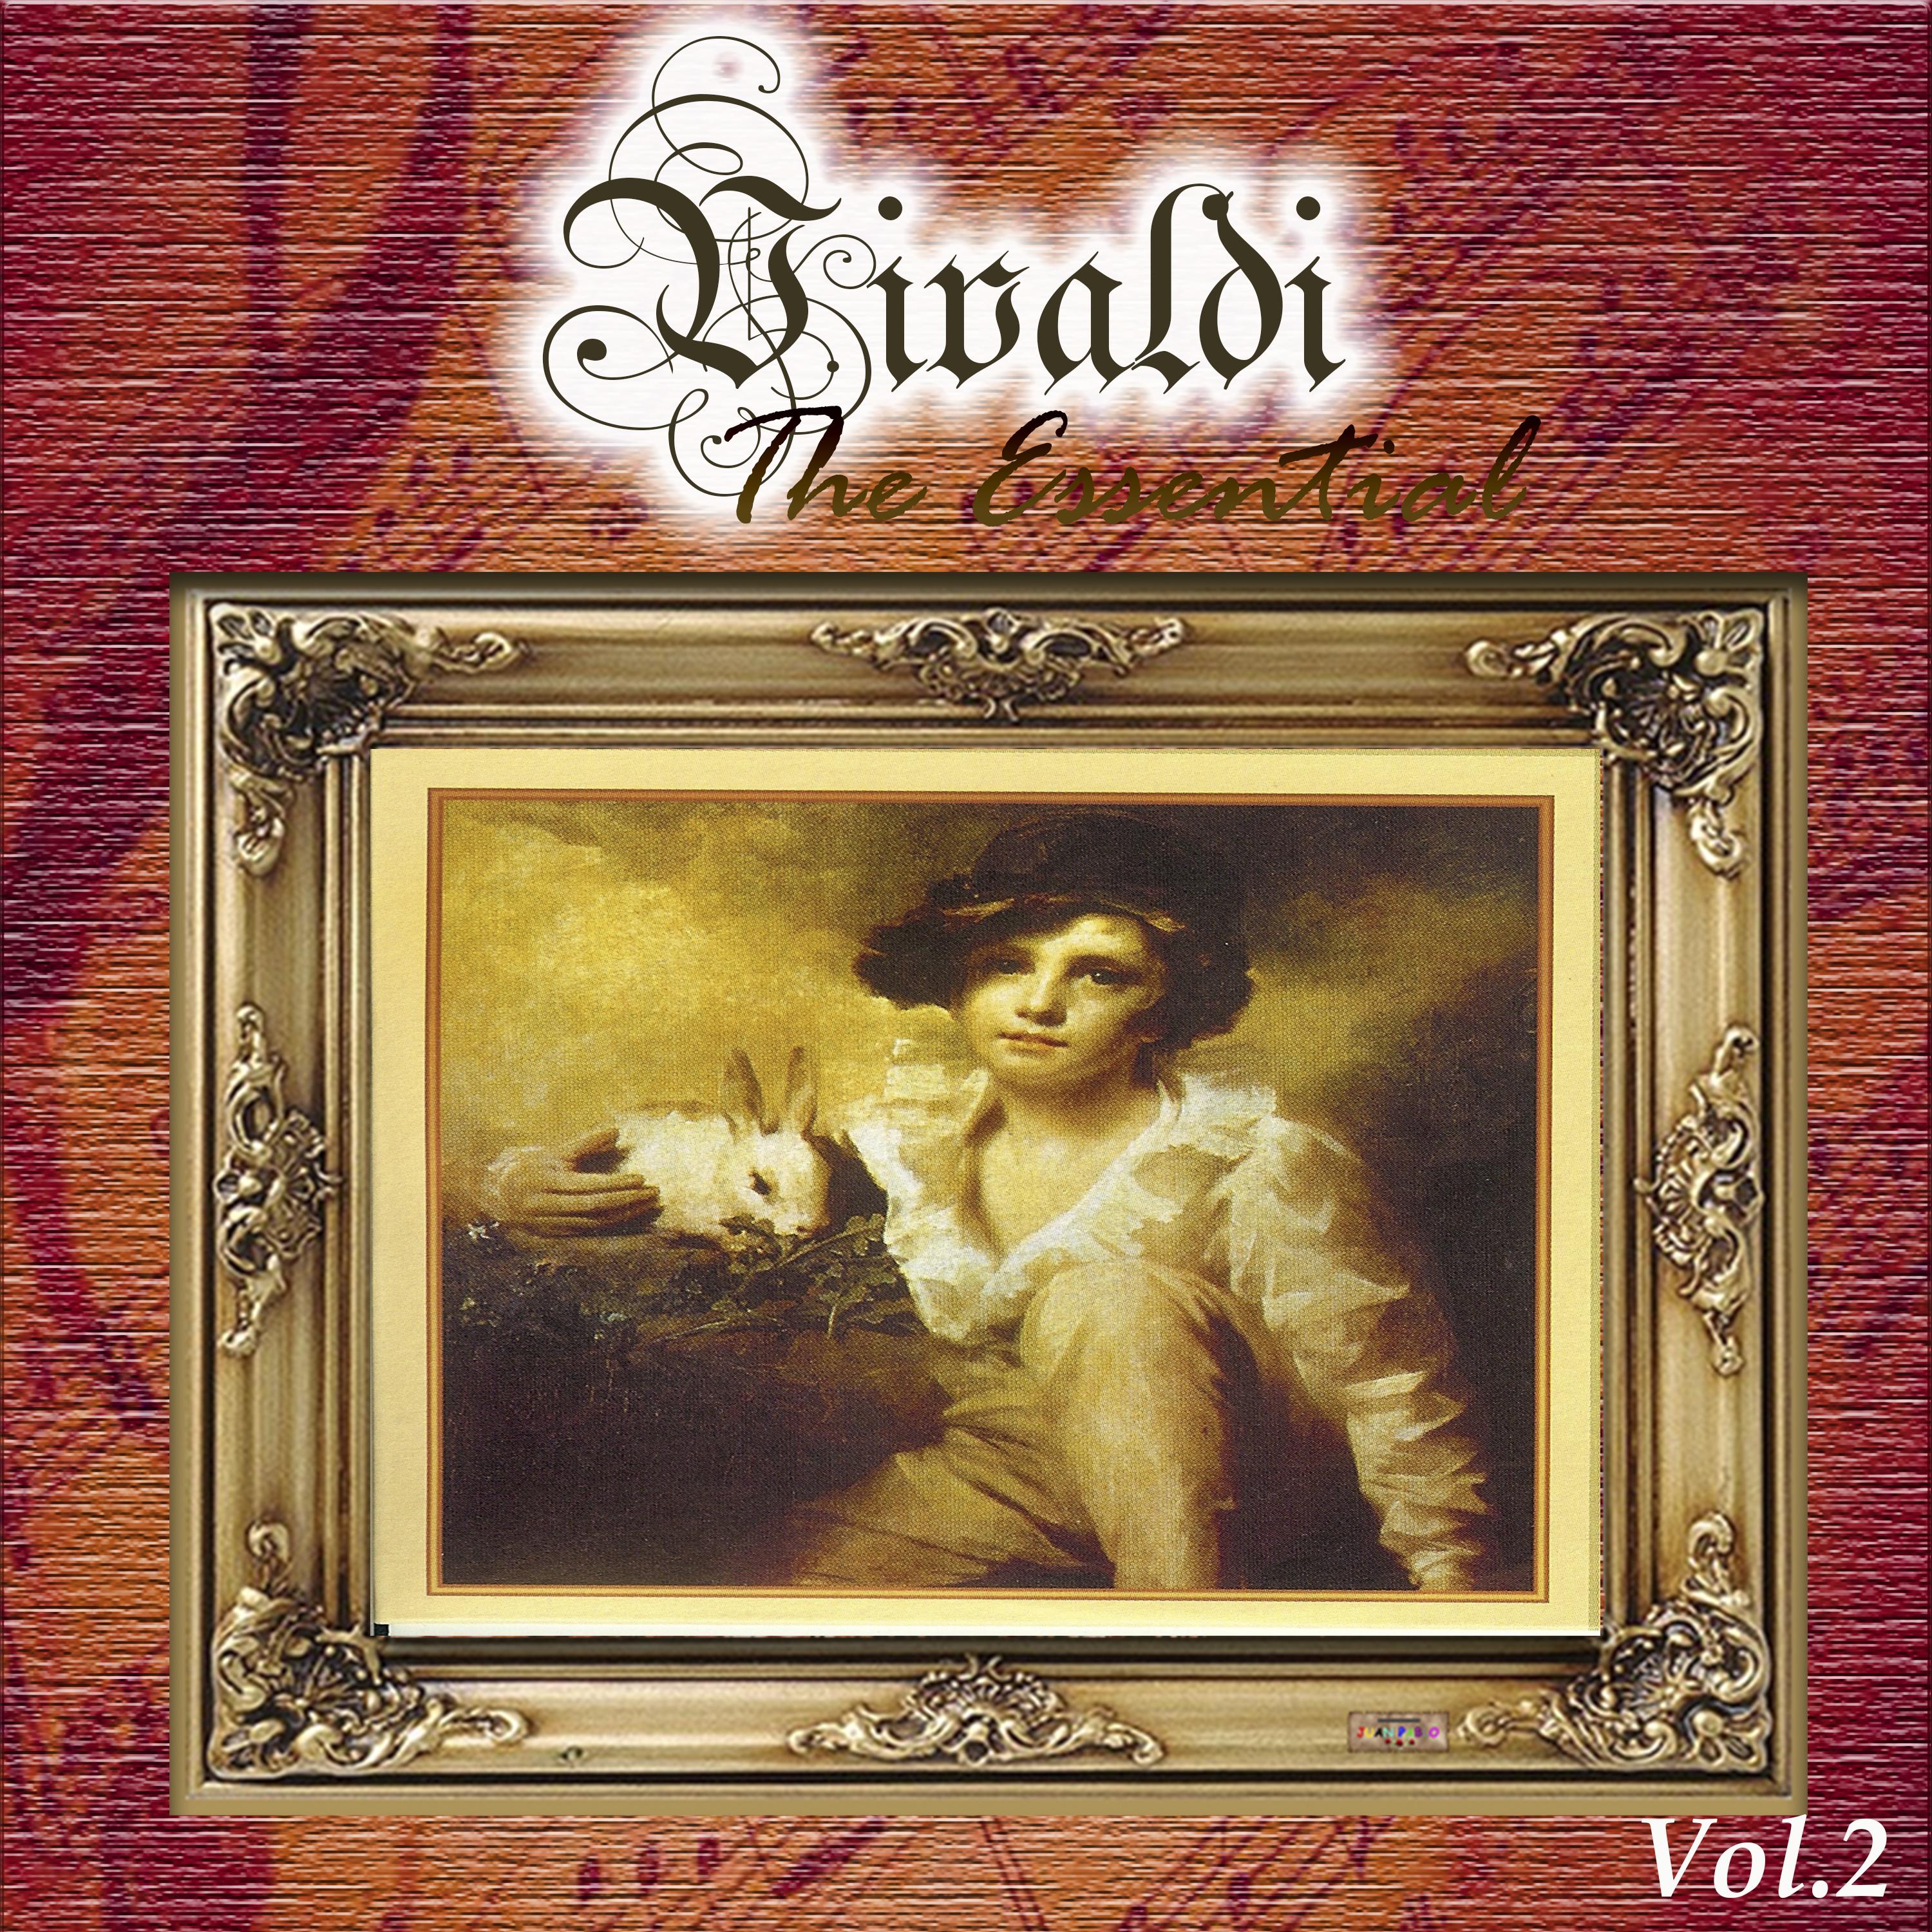 Vivaldi - The Essential, Vol. 2